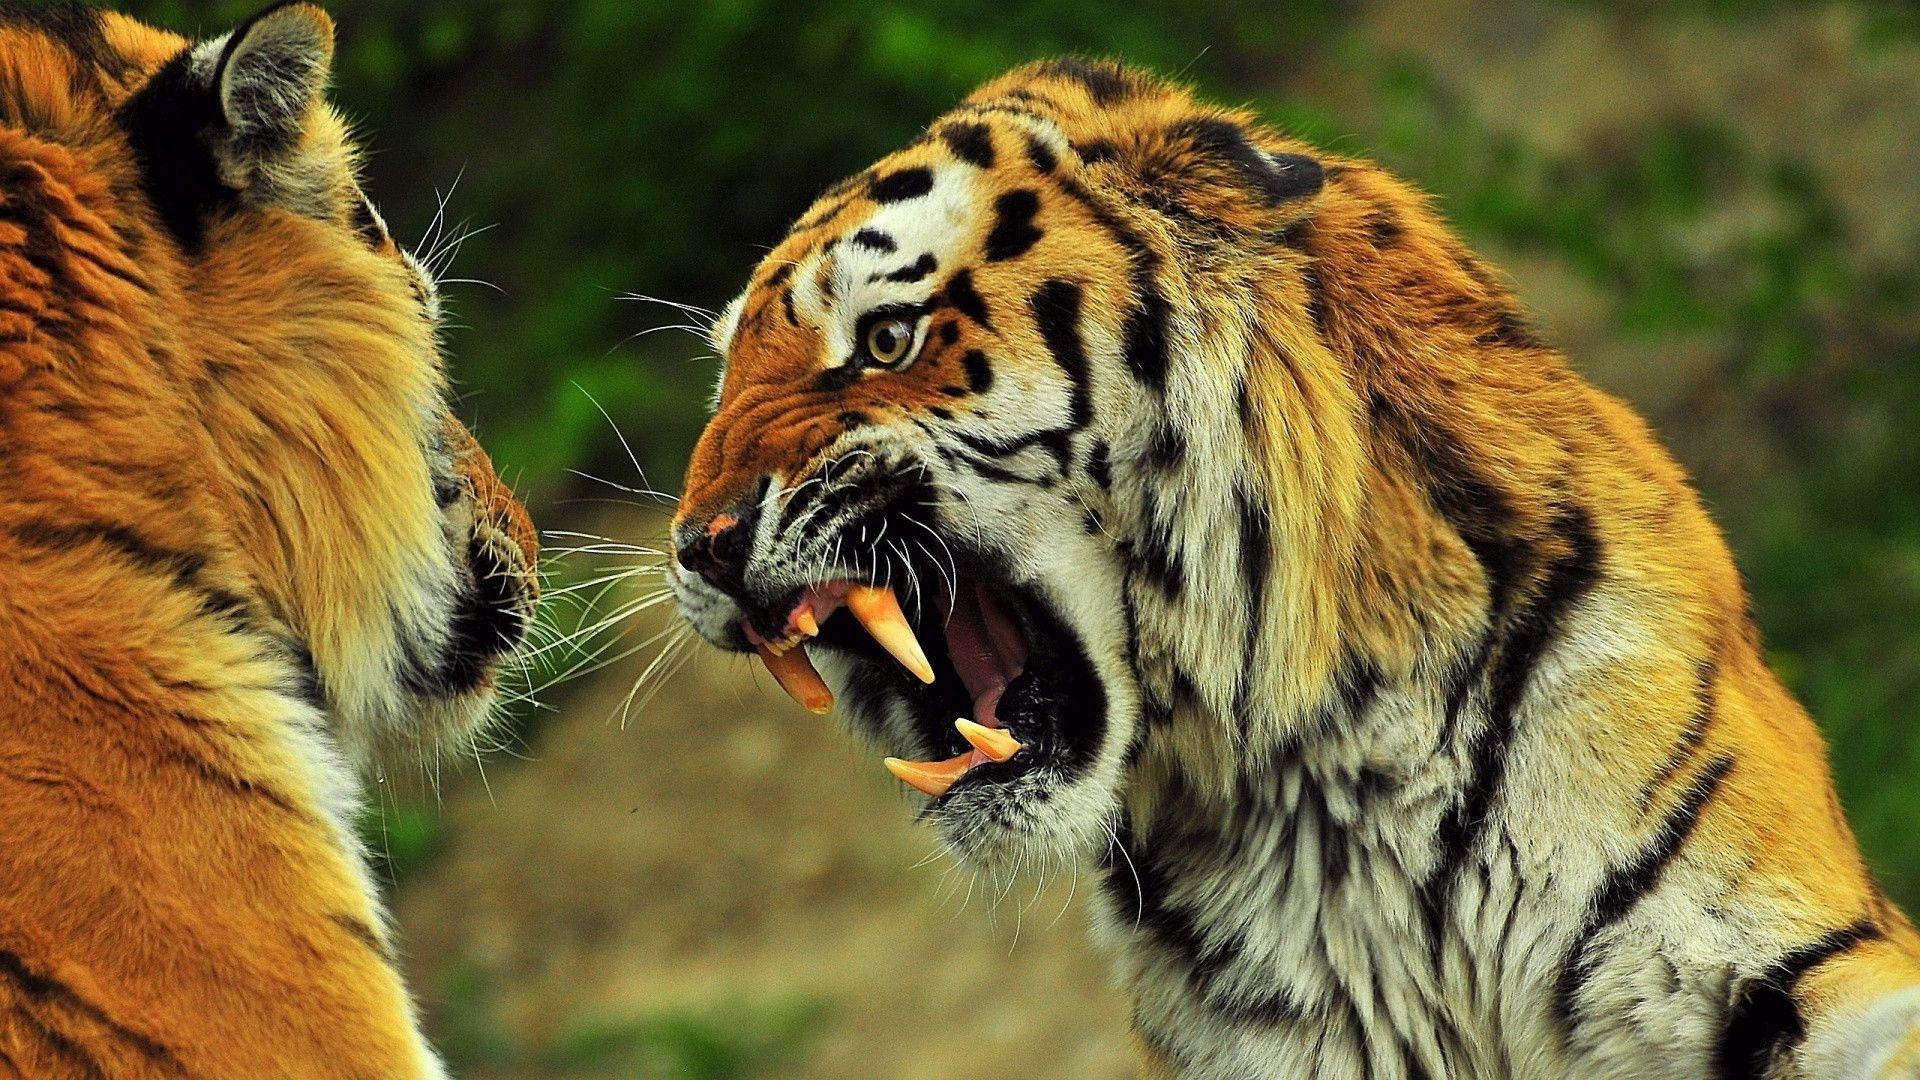 Angry Tiger wallpaper